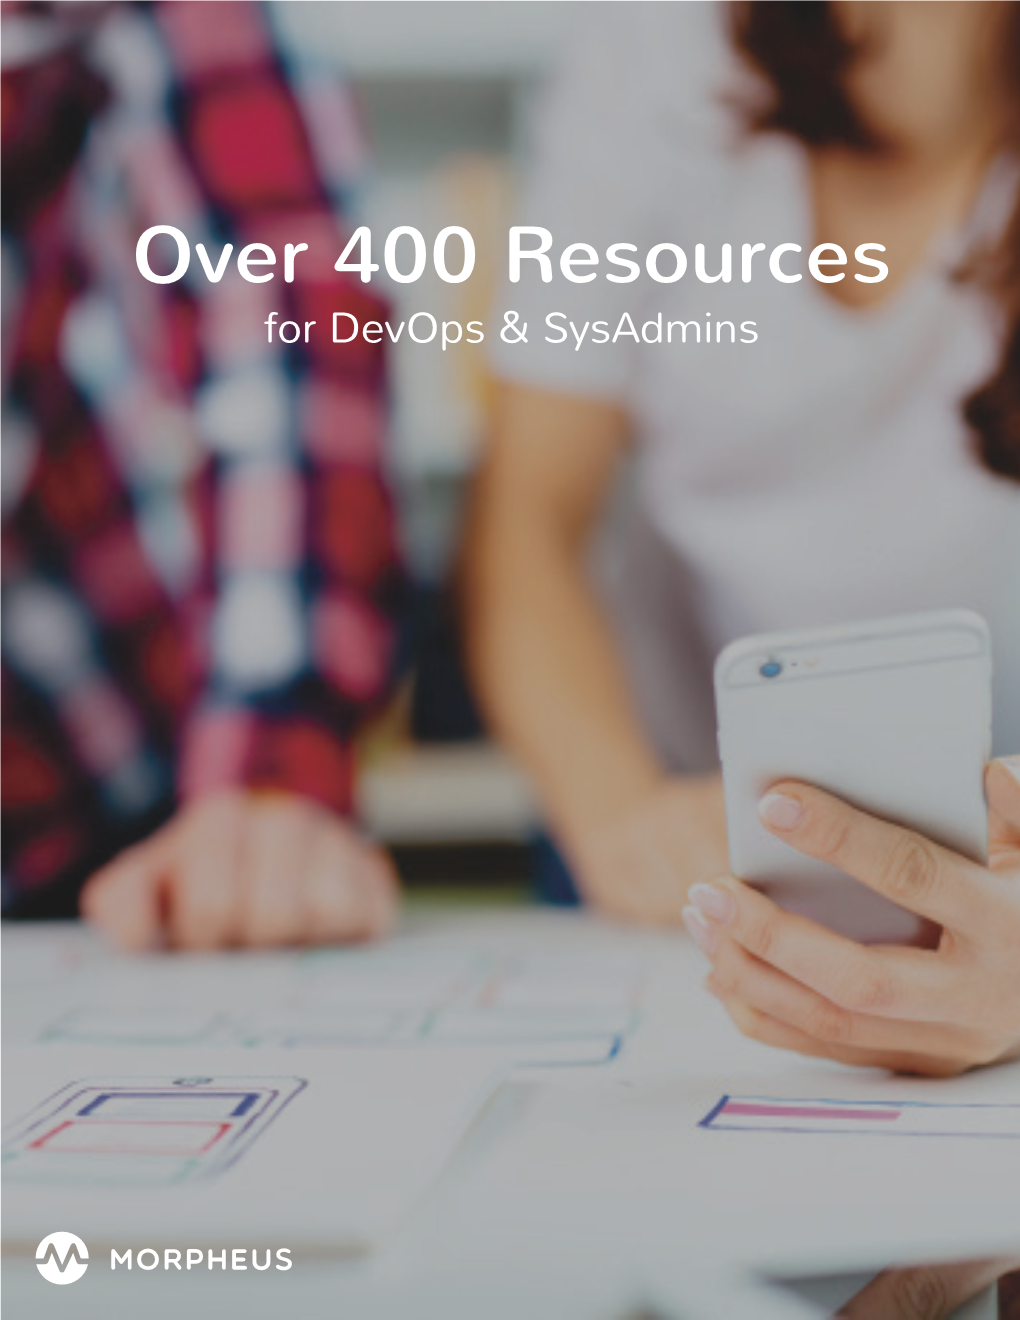 Over 400 Resources for Devops & Sysadmins